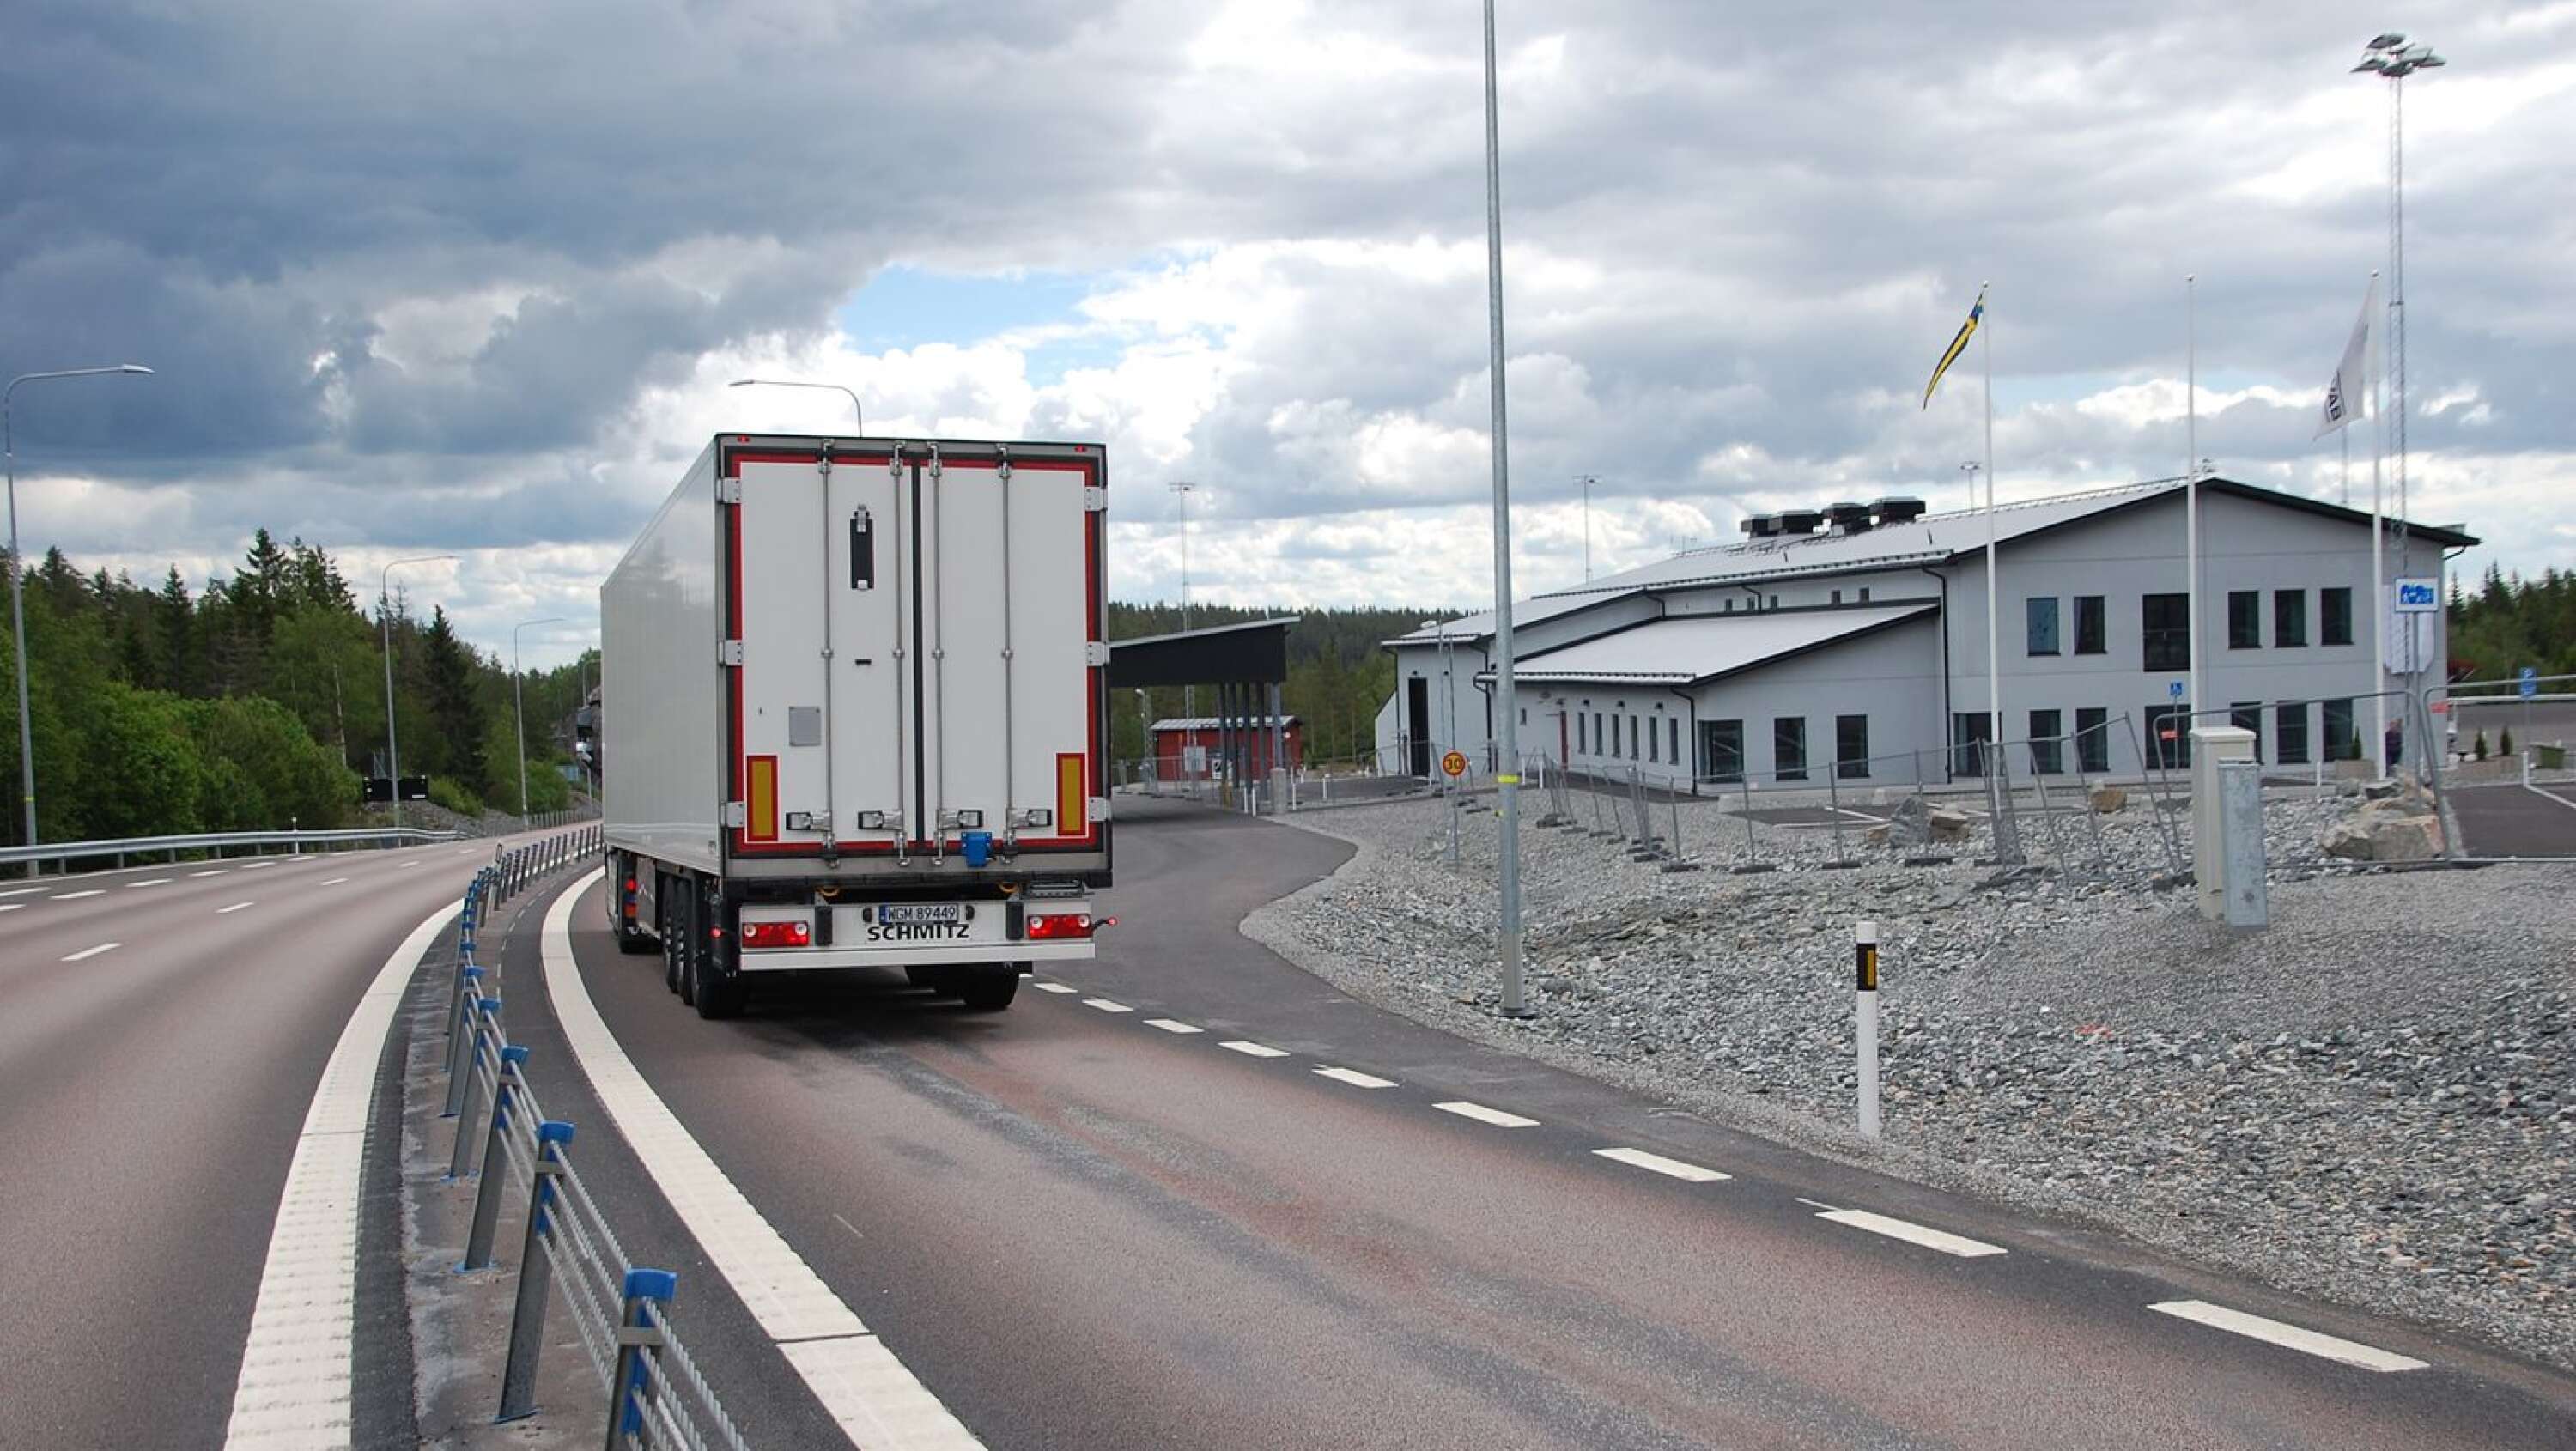 Det har varit en bra start på 2021 för tullen längs den norska gränsen. Här ses tullstationen i Hån som stod klar i somras.